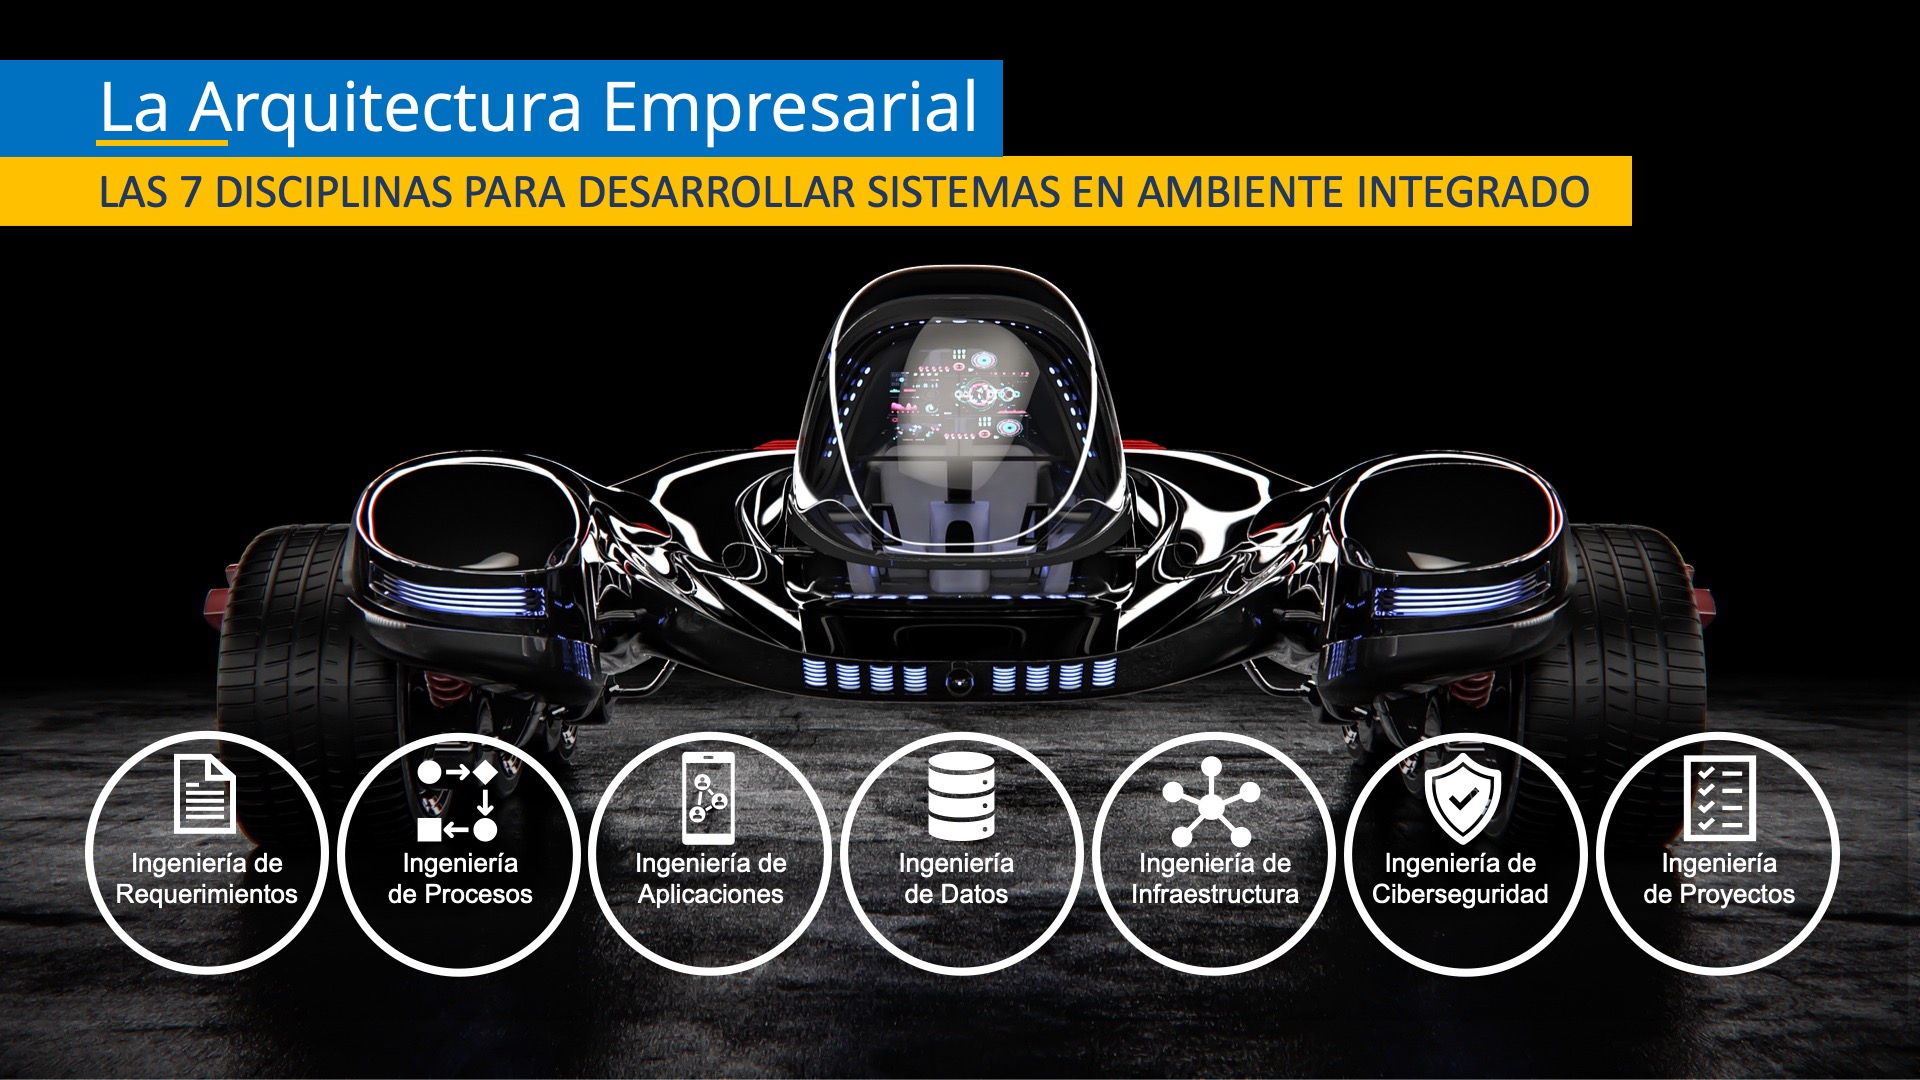 Las 7 disciplinas para desarrollar sistemas integrados con el uso de la Arquitectura Empresarial